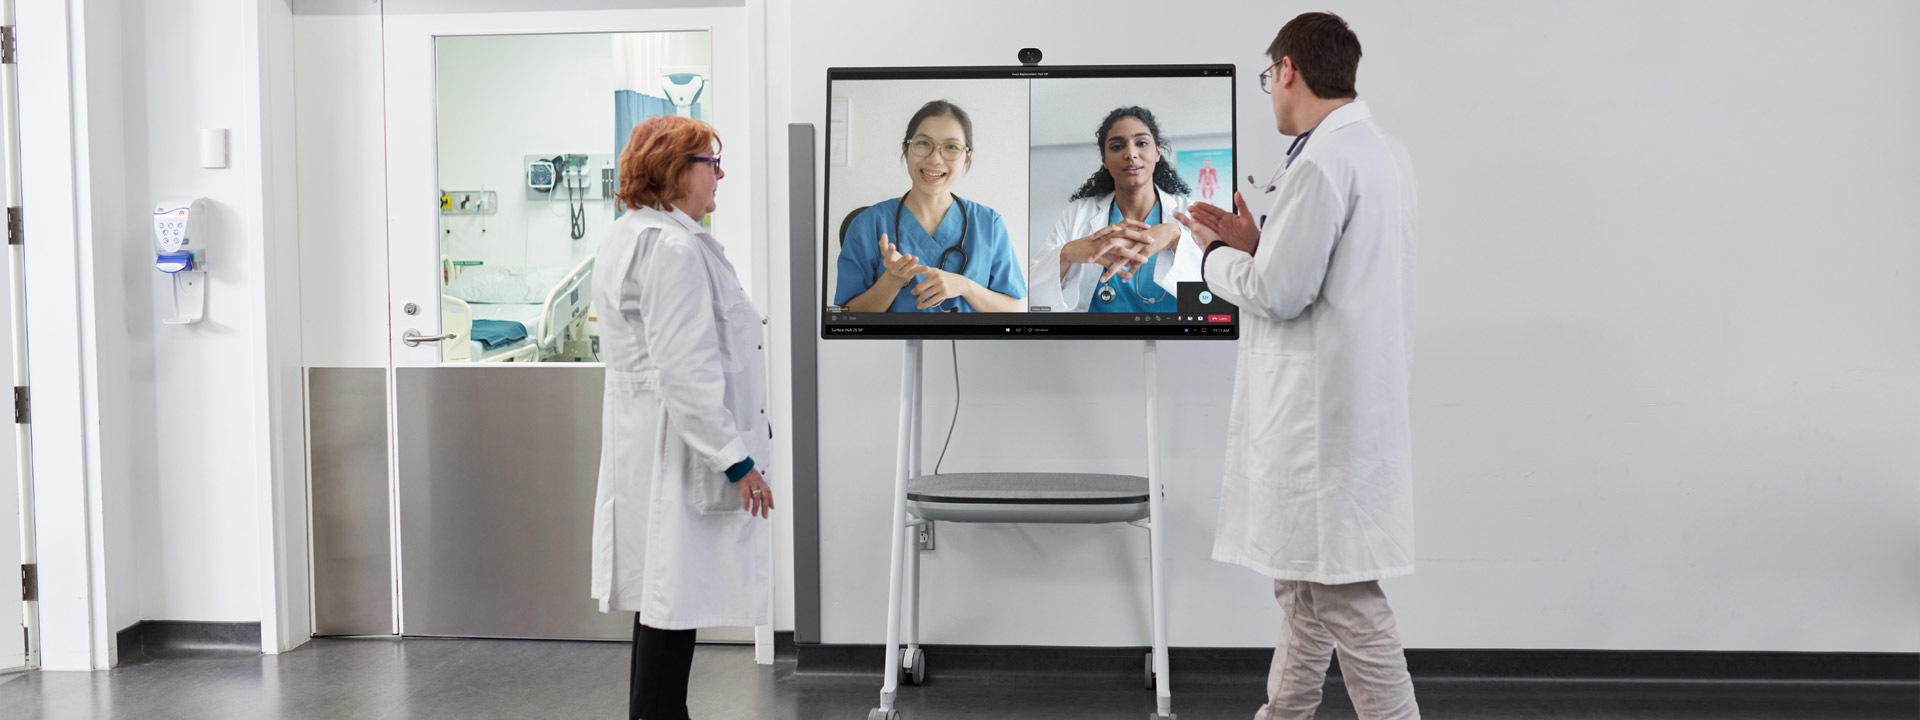 Kaksi hoitoalan ammattilaista osallistuu Teams-videopuheluun sairaalaympäristössä